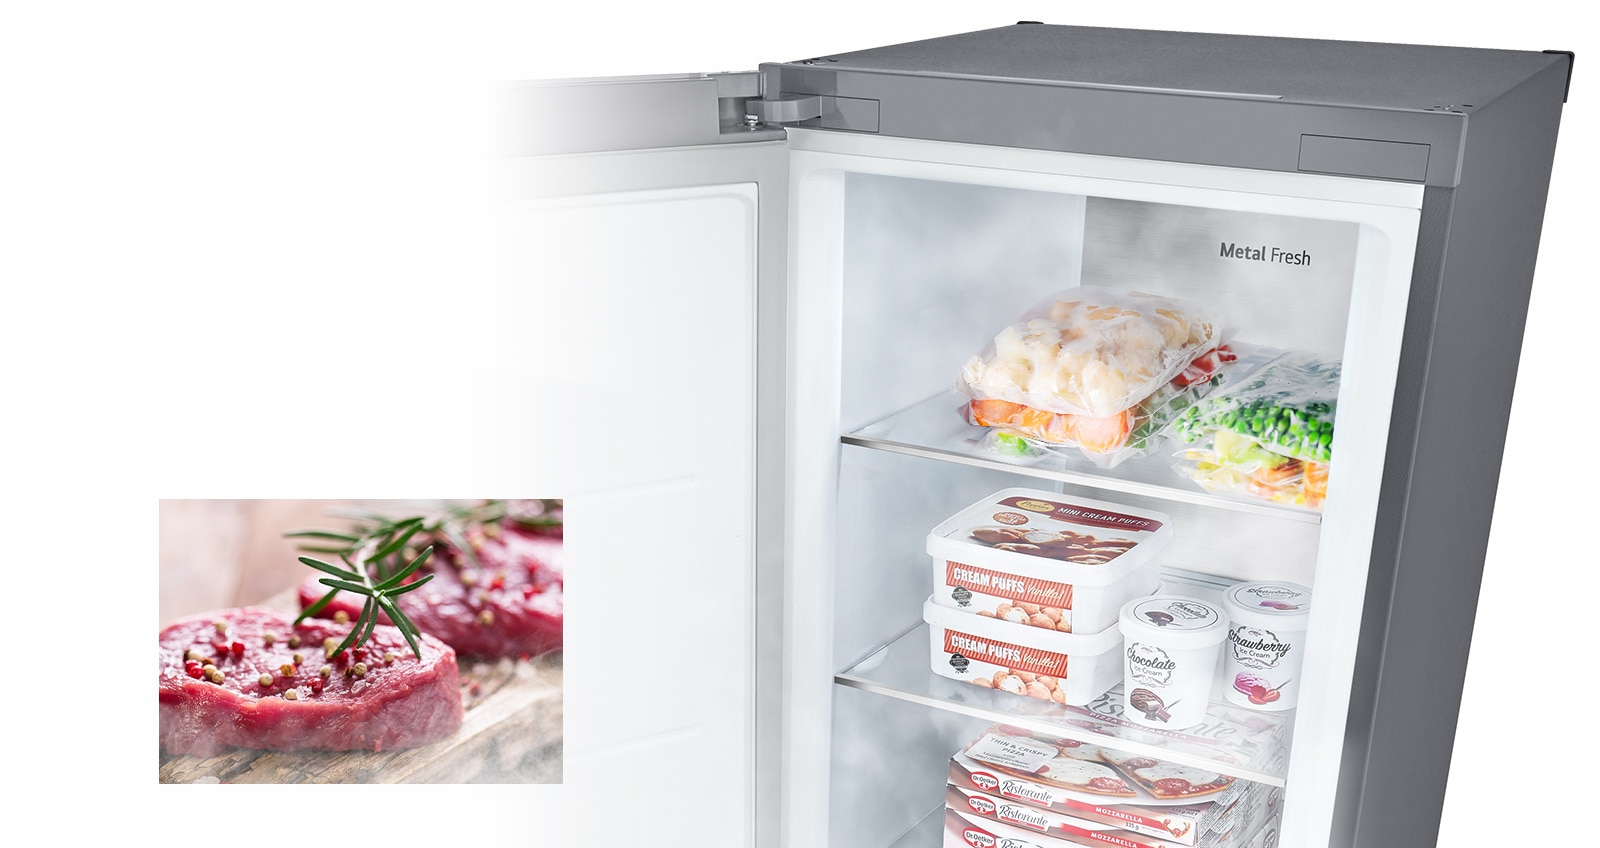 顯示打開的冰箱，裡面裝滿農產品且冷風吹過的圖片。第二張圖片顯示已解凍並準備烹飪的未煮熟生肉。